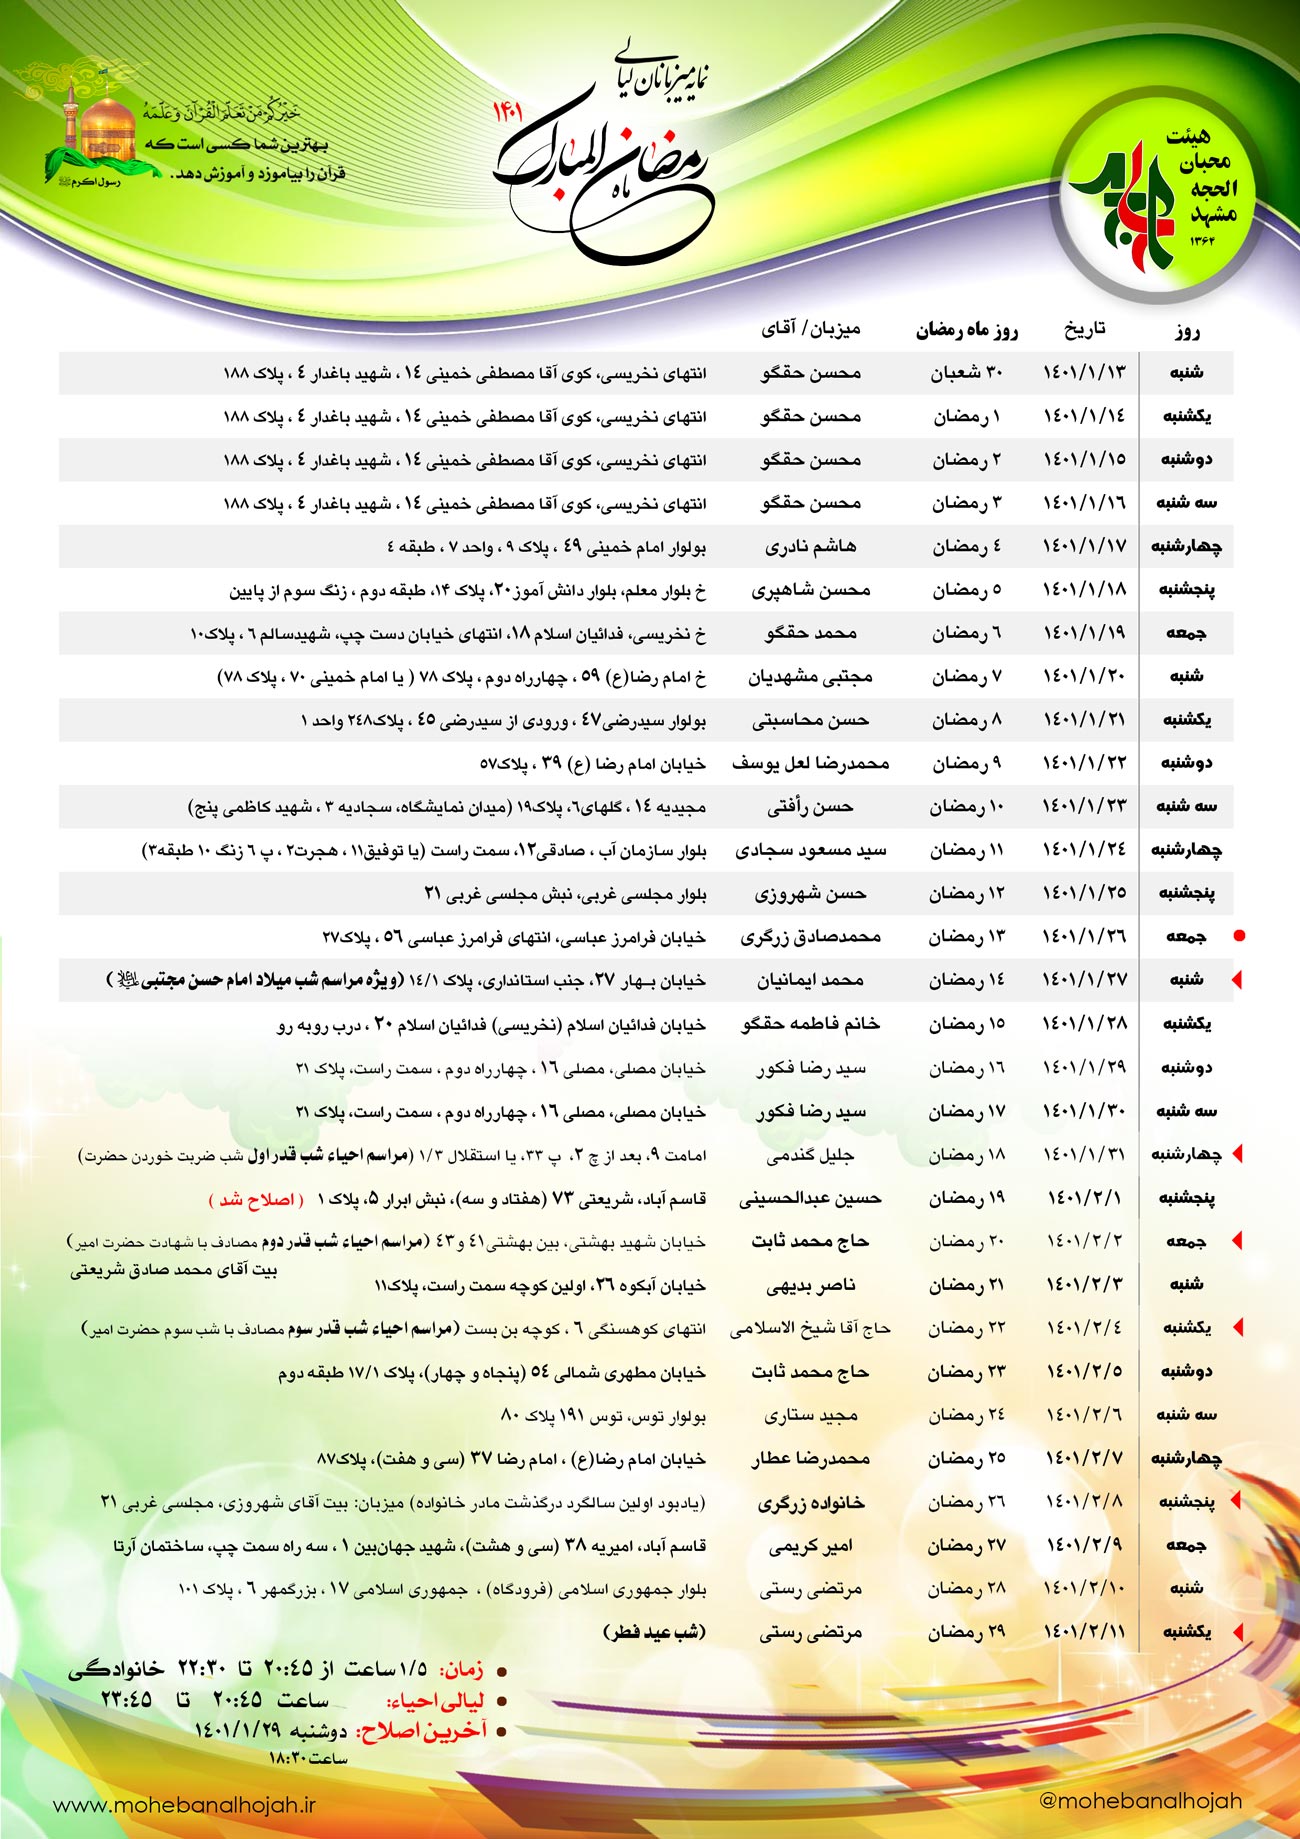 جدیدترین جدول اسامی میزبانان جلسات ماه مبارک رمضان ۱۴۰۱ هیئت قرآنی اهل بیتی محبان الحجه مشهد